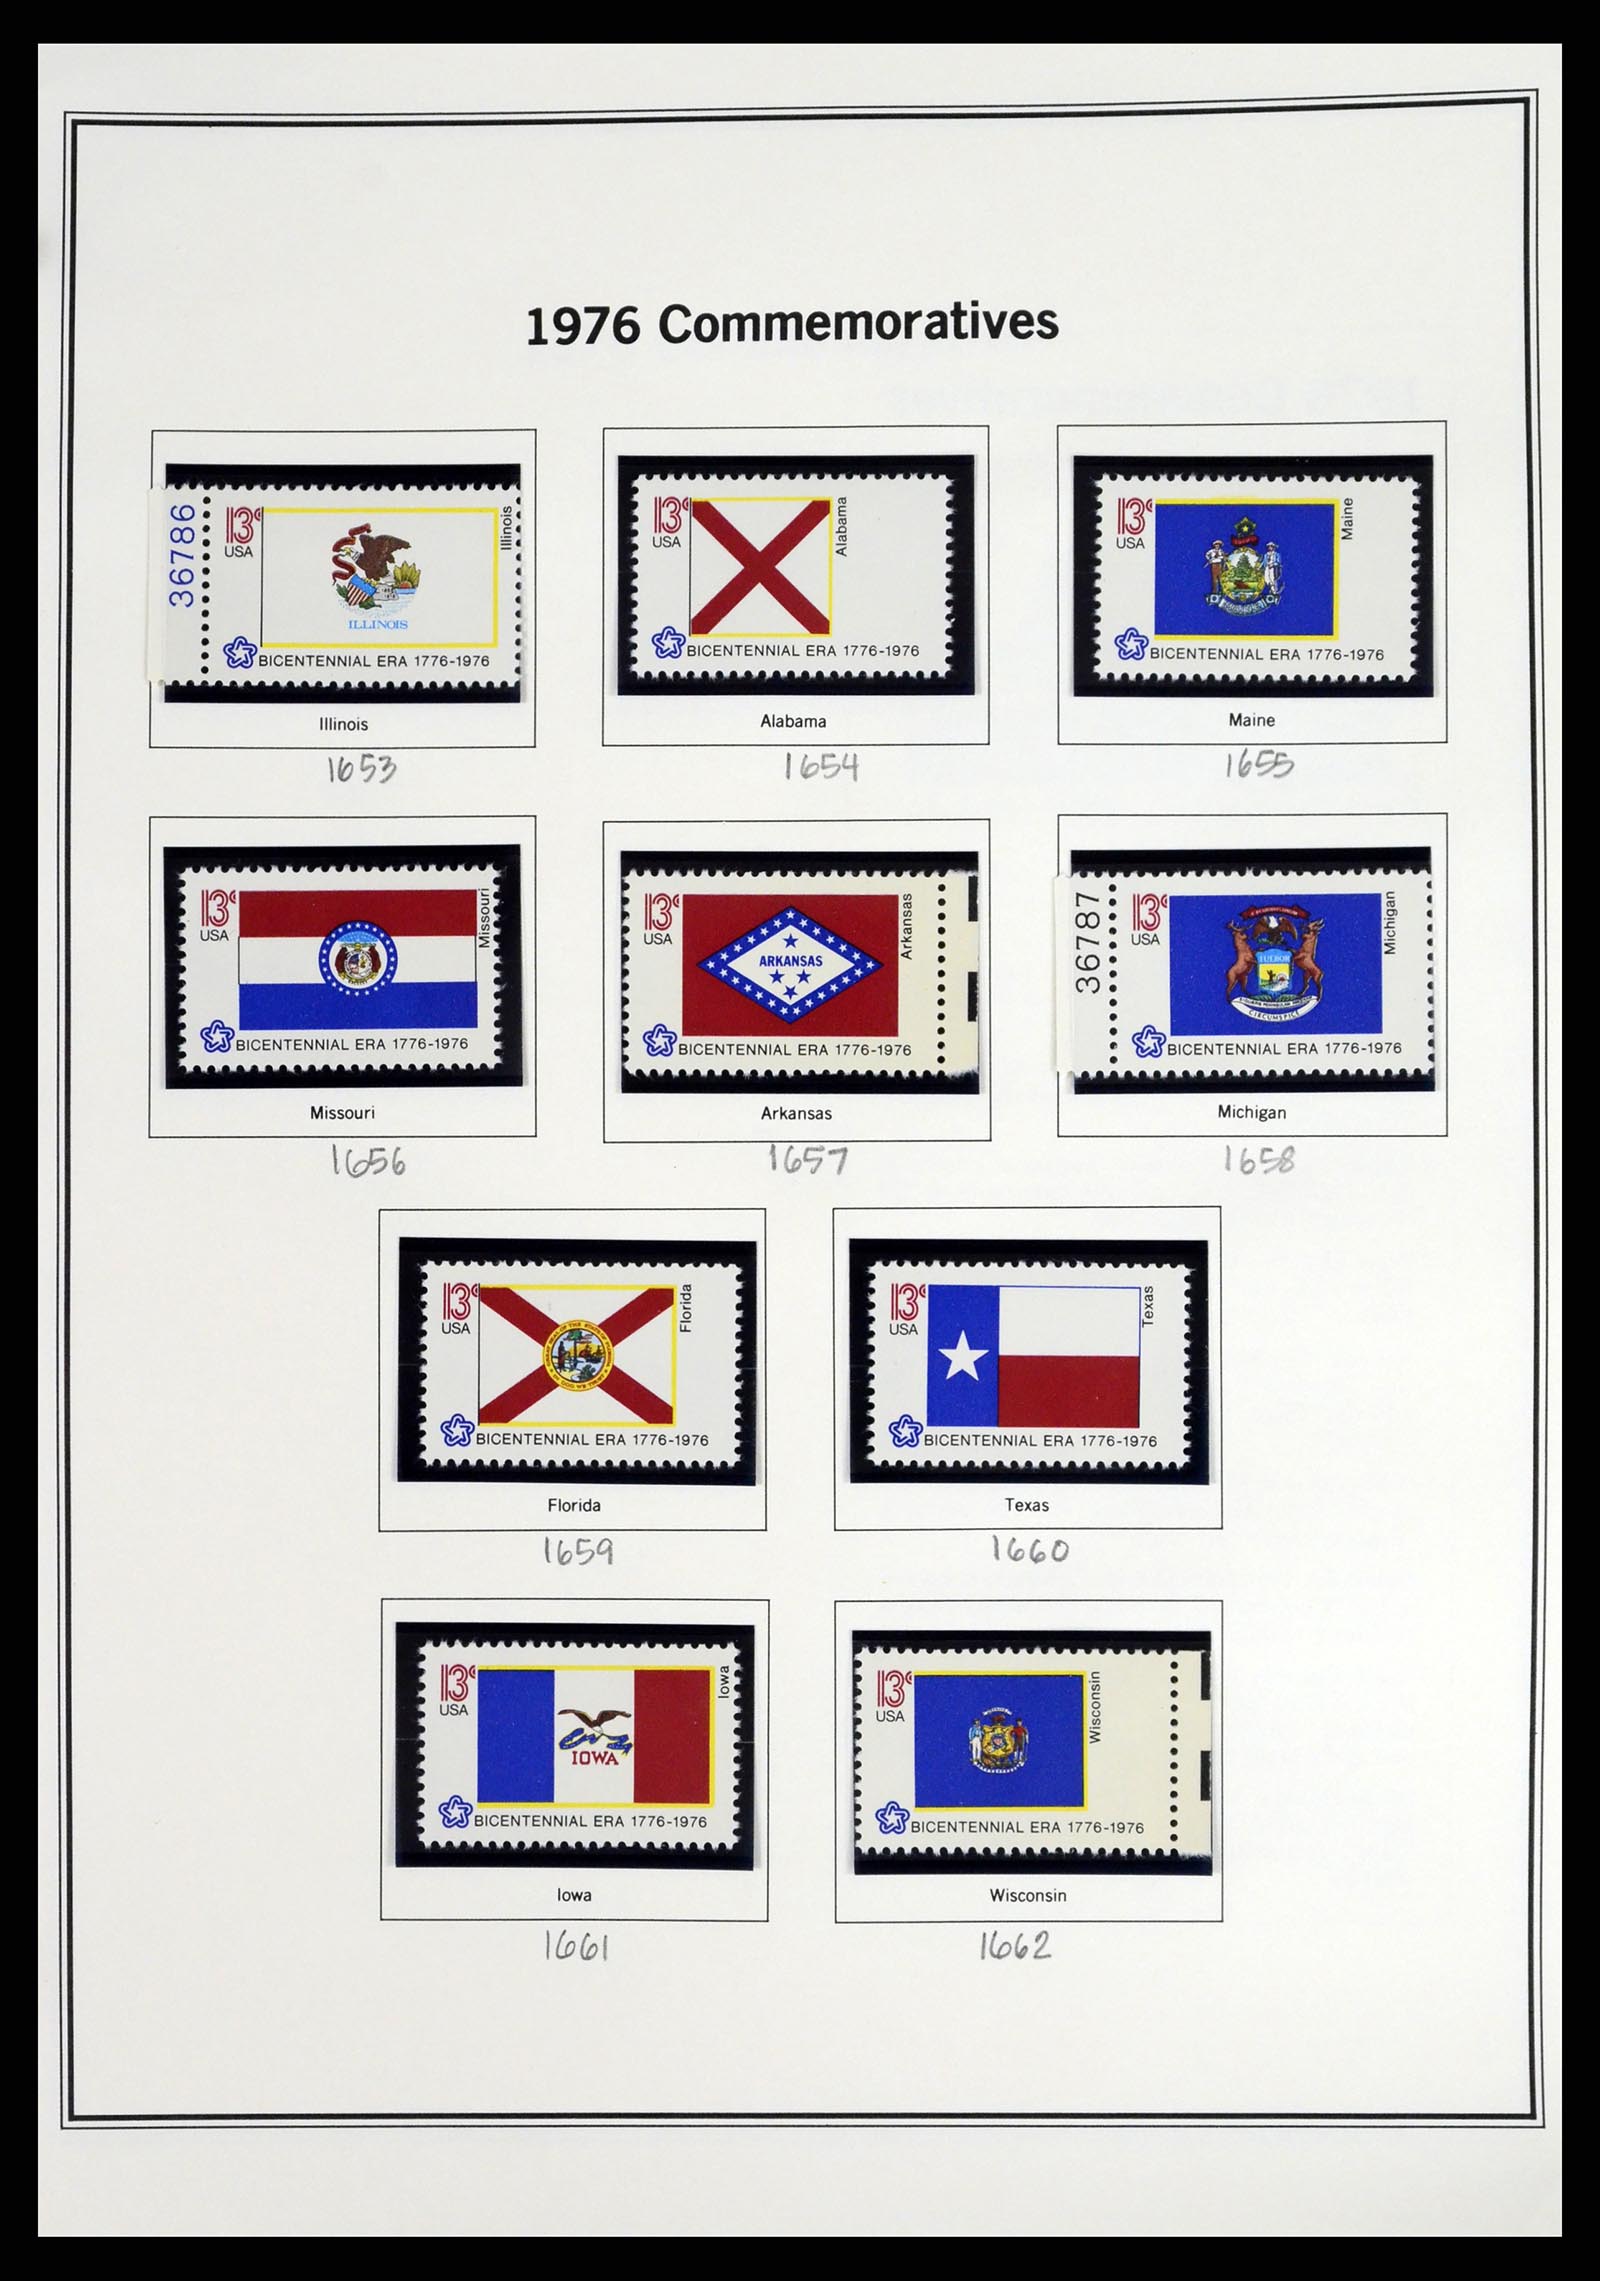 37193 031 - Stamp collection 37193 USA 1970-2020!